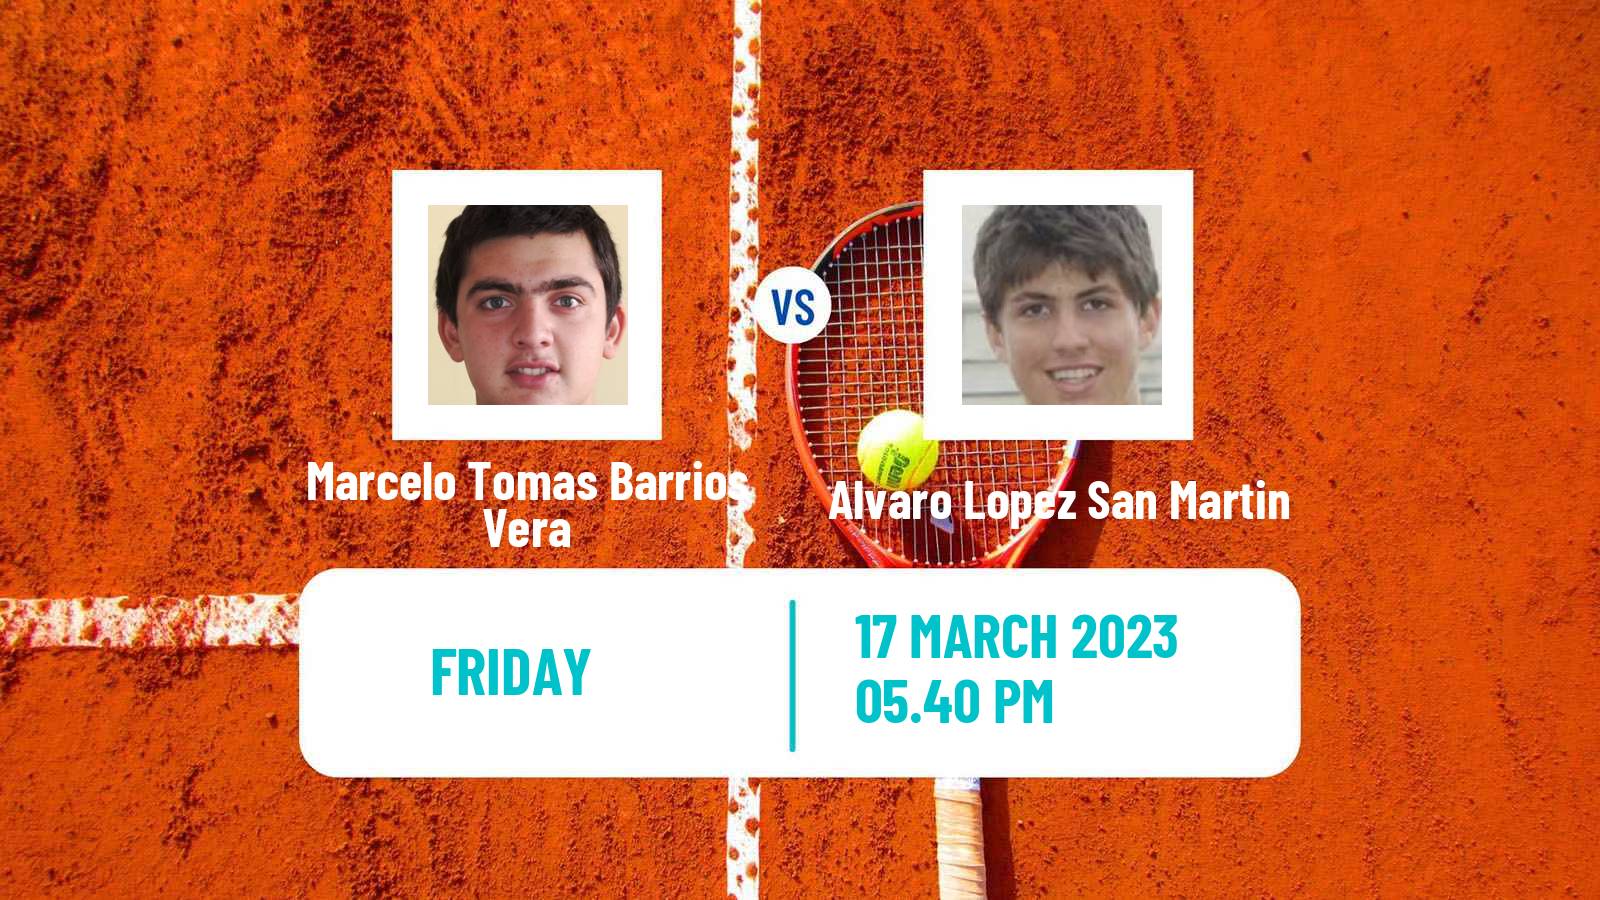 Tennis ATP Challenger Marcelo Tomas Barrios Vera - Alvaro Lopez San Martin